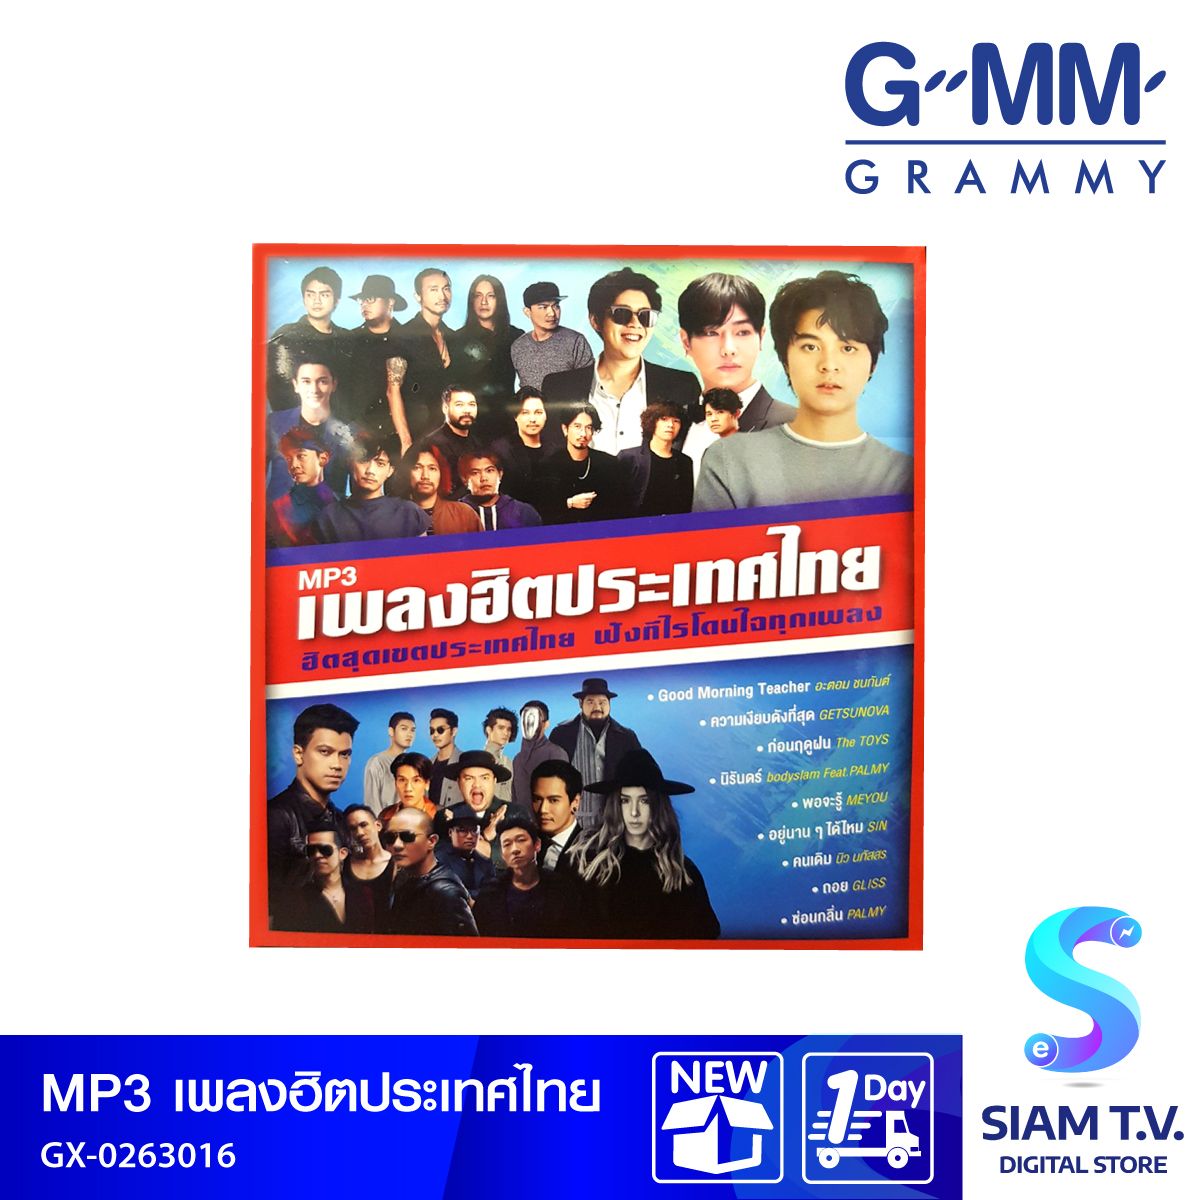 GMM GRAMMY  MP3 เพลงฮิตประเทศไทย